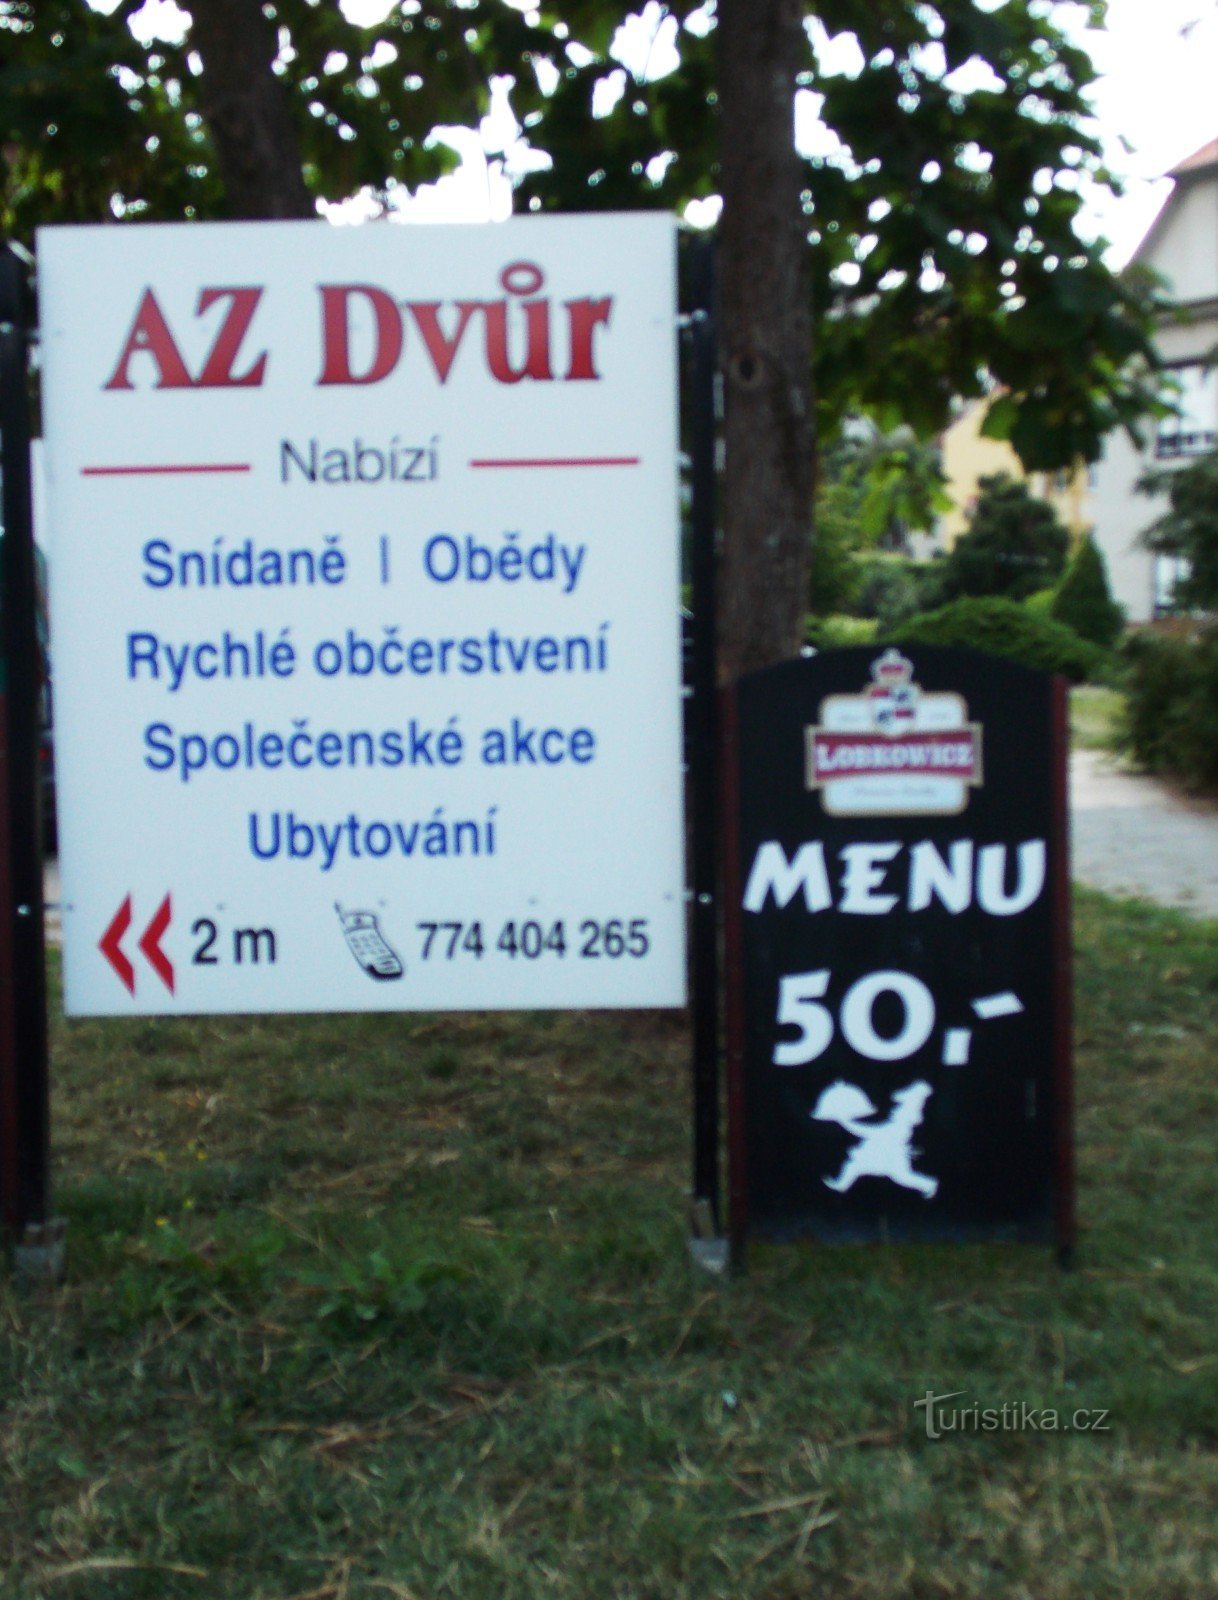 Restaurant AZ dvůr in Luhačovice